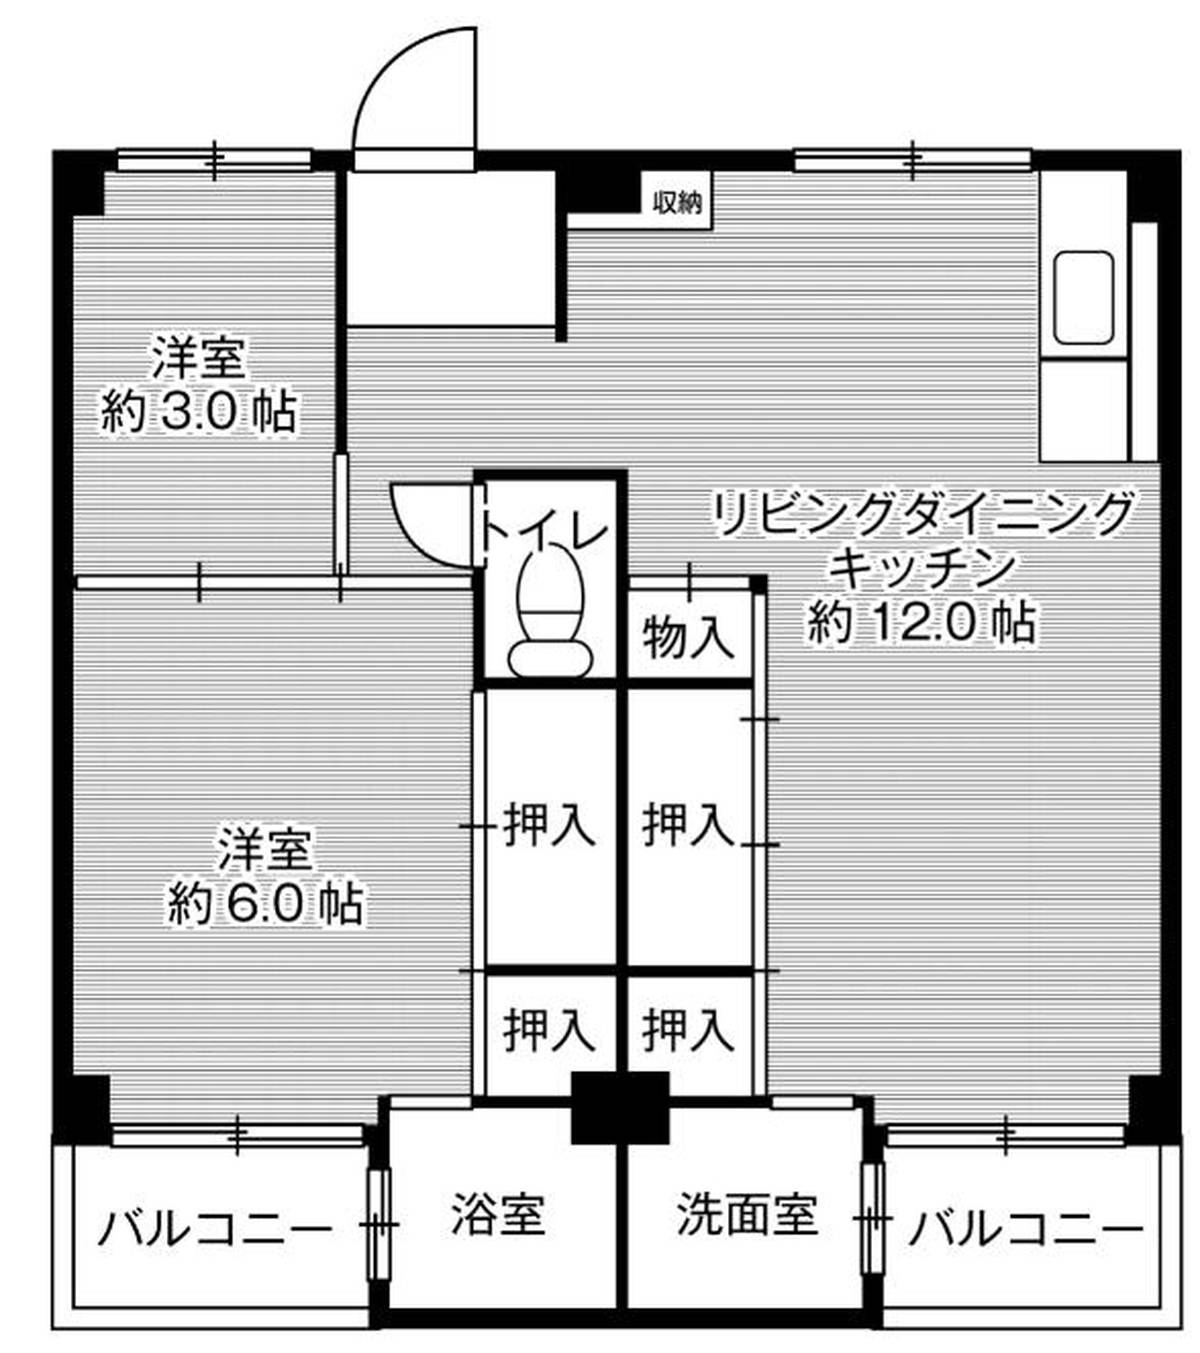 2LDK floorplan of Village House Mise in Kashihara-shi